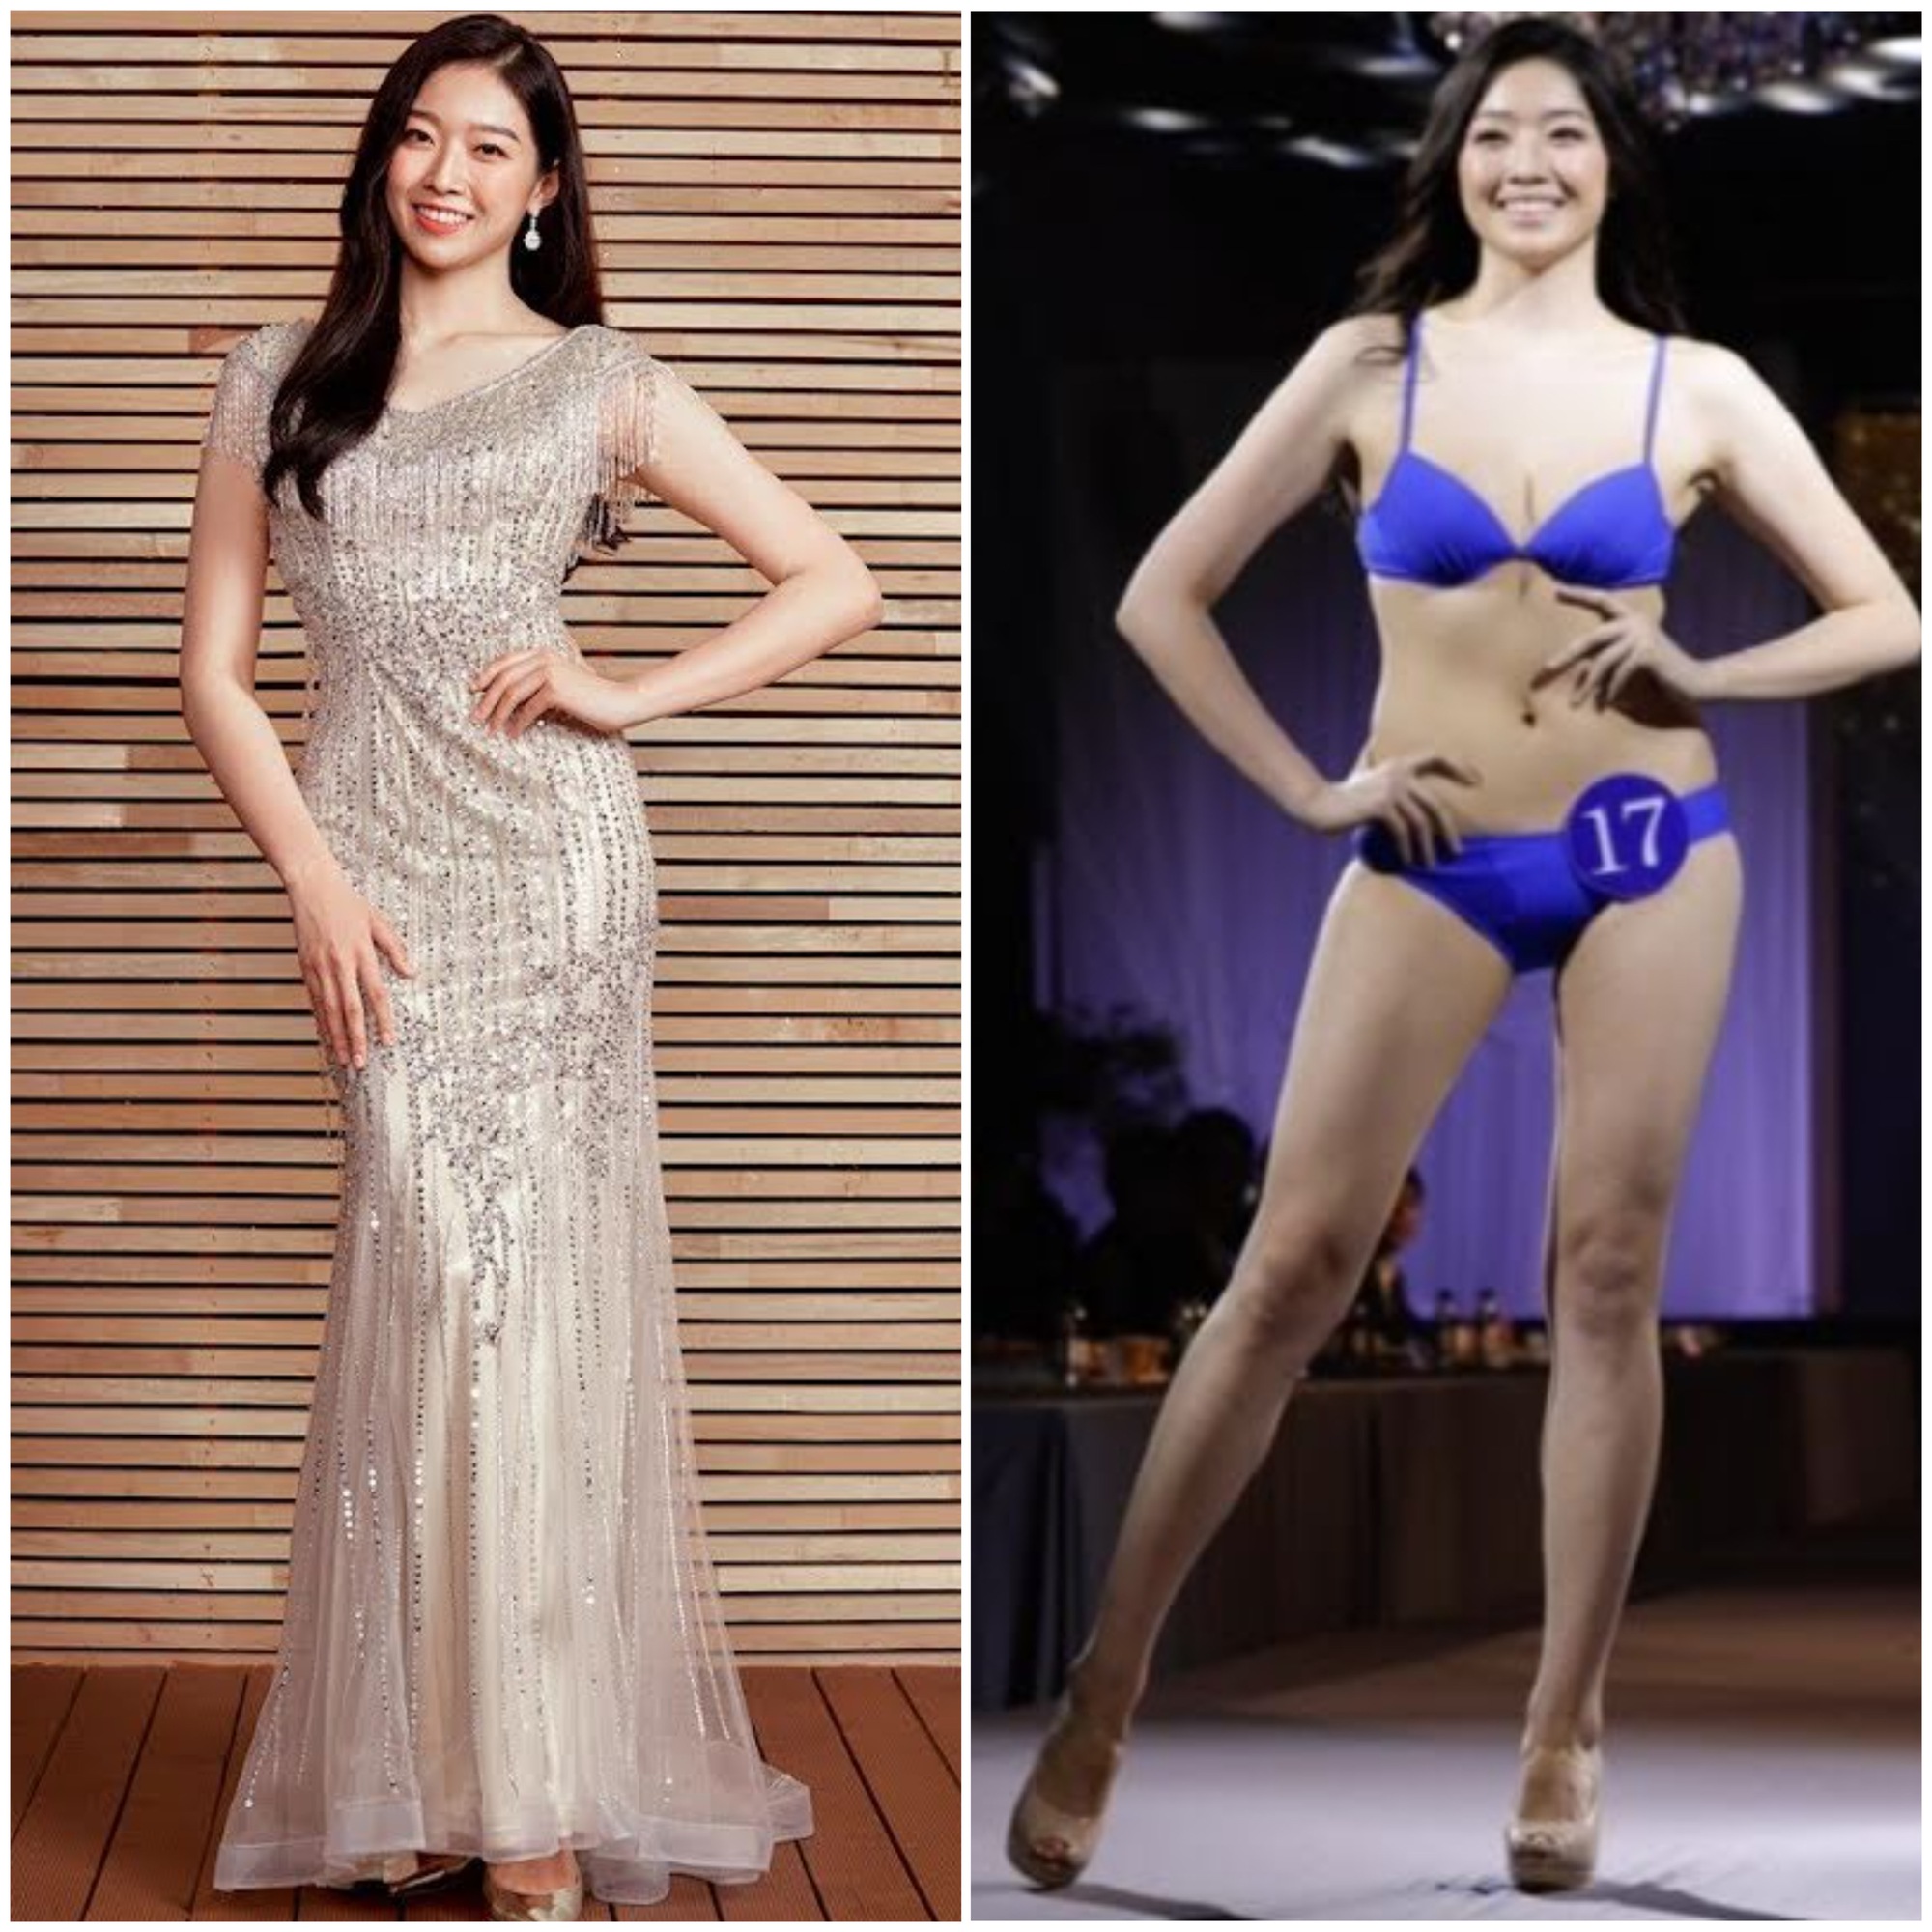 Hoa hậu Hàn Quốc từng bị chê bai nhan sắc thậm tệ 'lột xác' sau 5 năm - Ảnh 2.